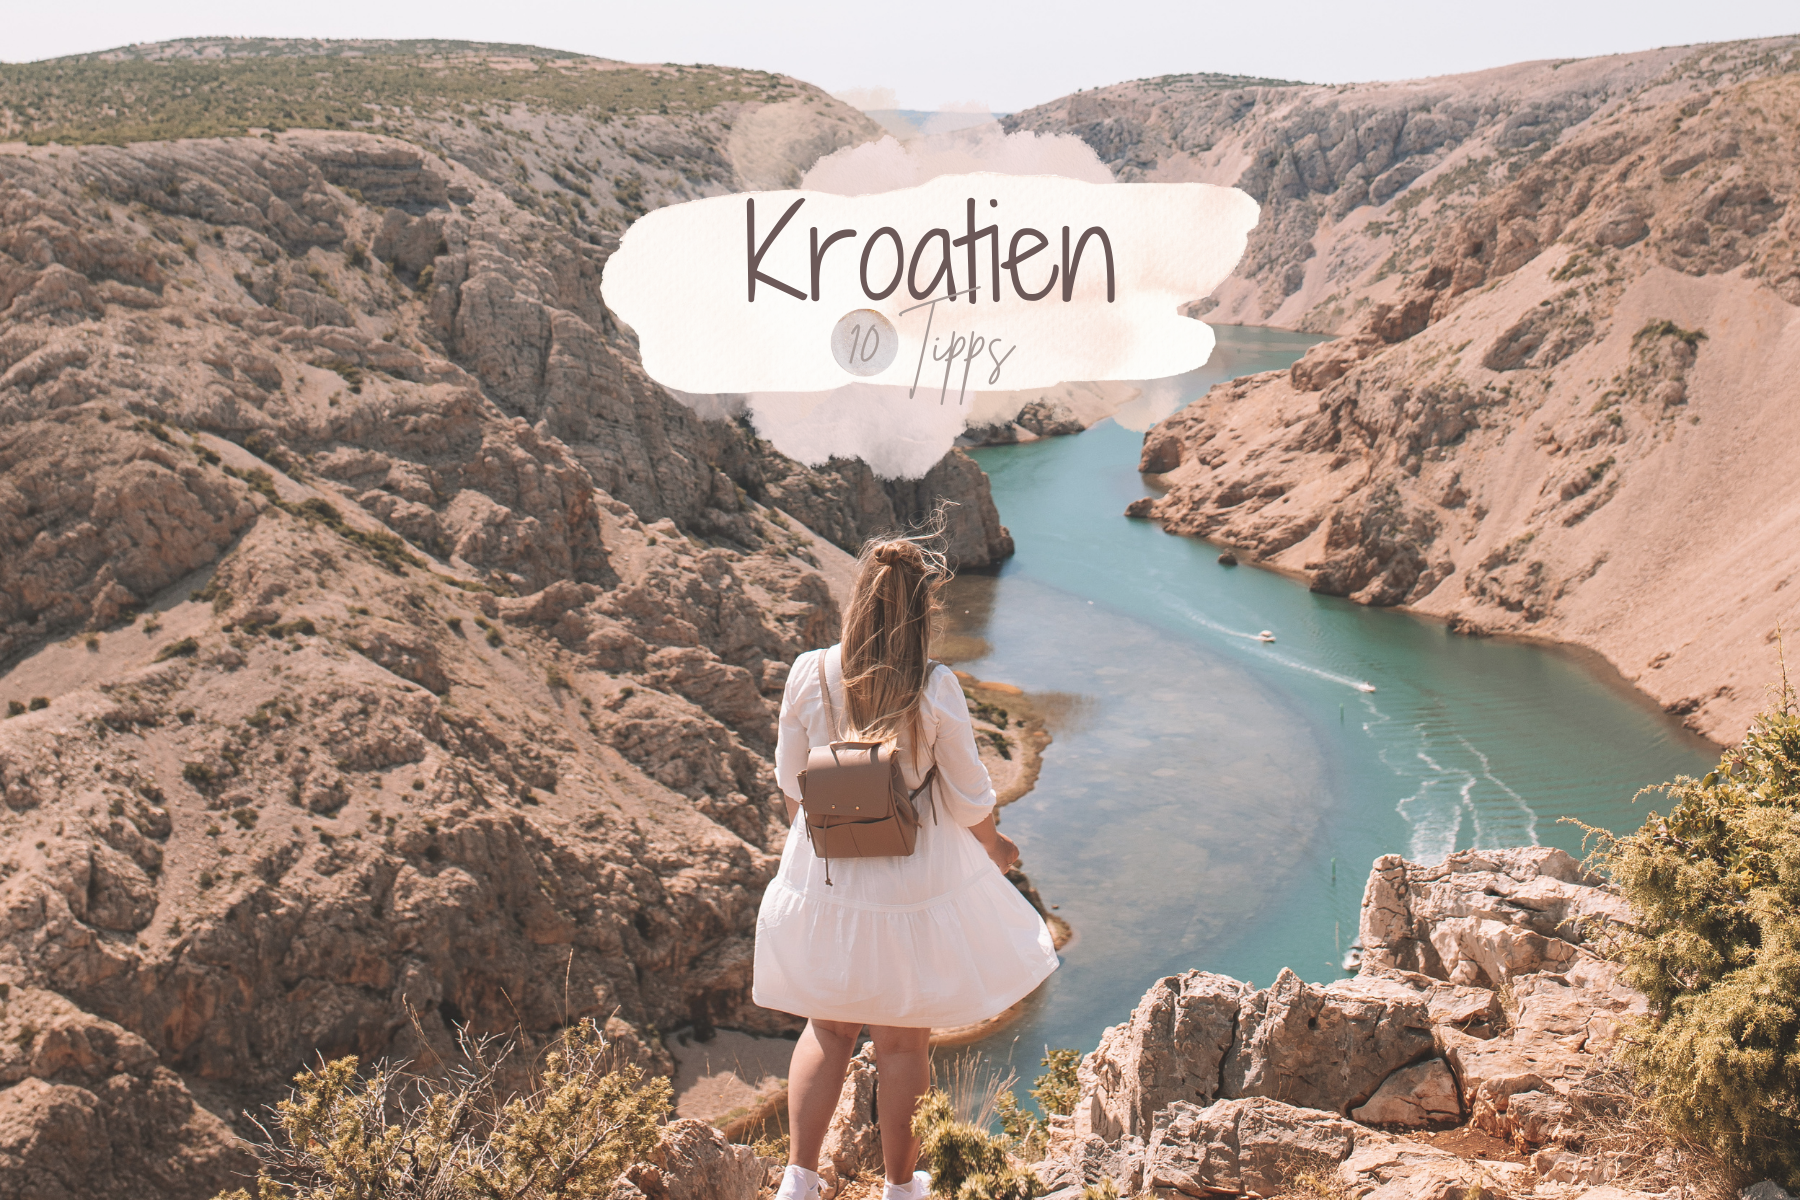 Kroatien: 10 Tipps für schöne Spots